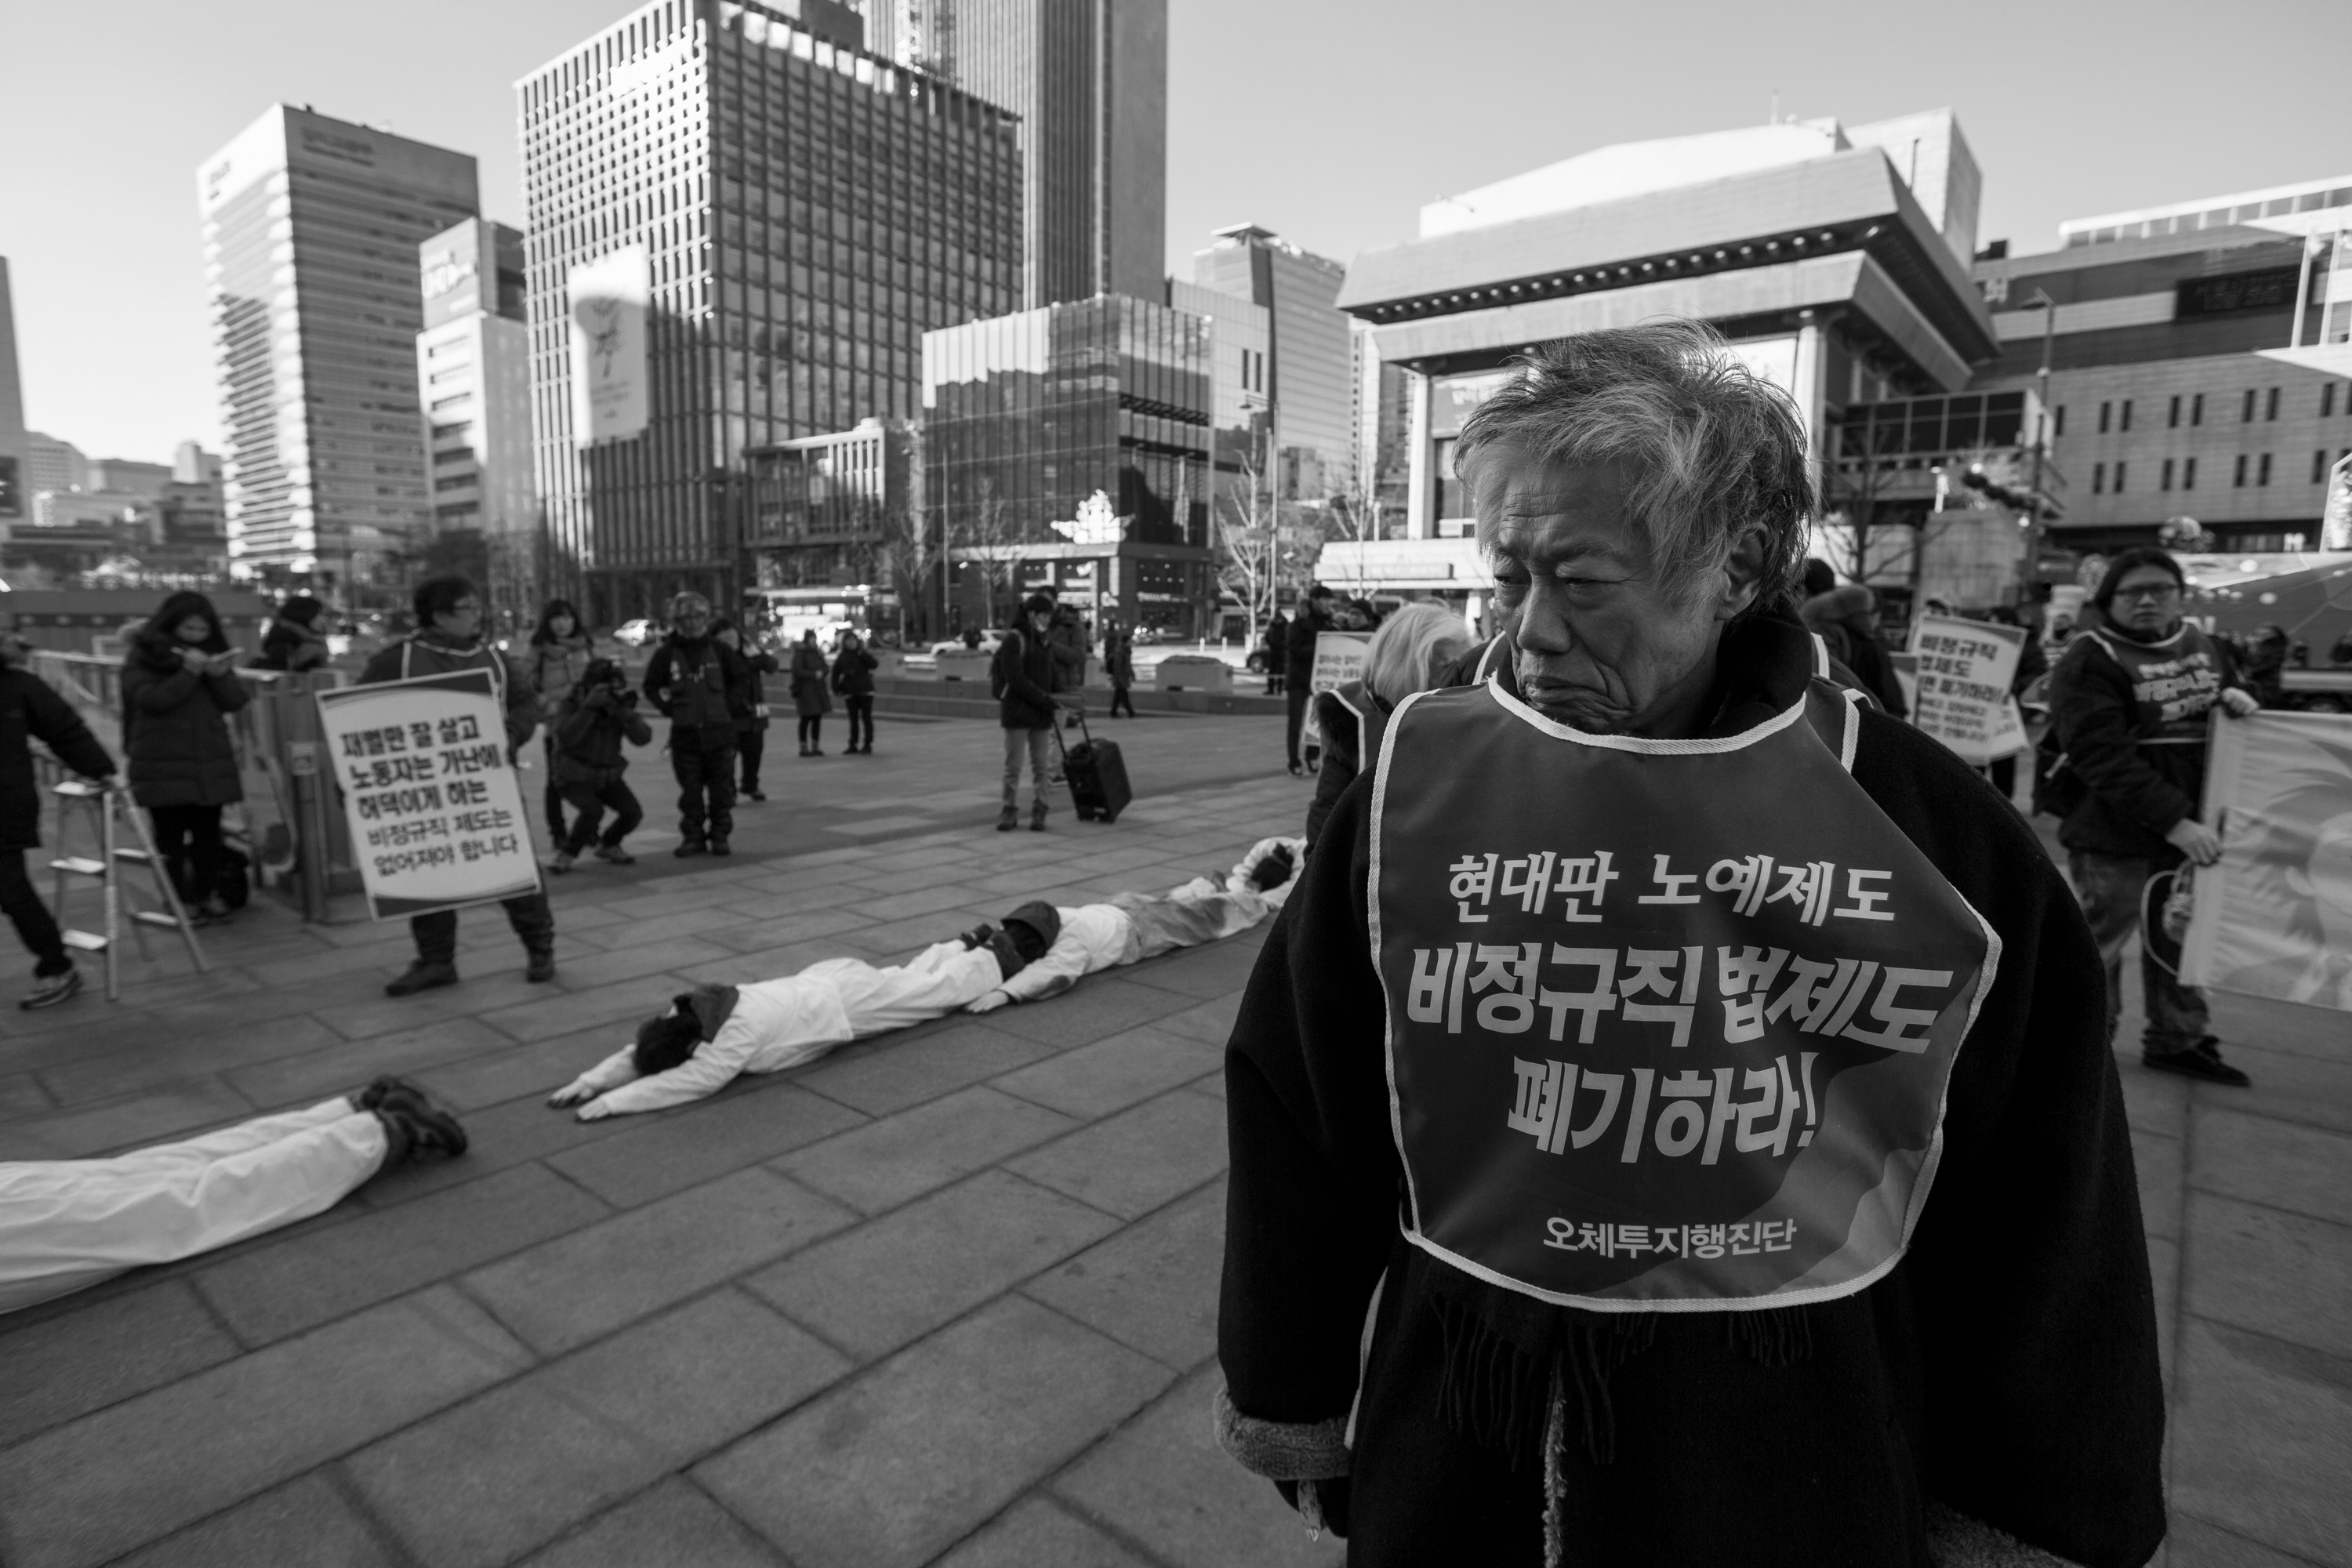 서울 광화문 광장 땅바닥에 비정규노동자들이 배를 깔고 엎드렸다. 비정규직 없는 세상을 위해 오체투지에 나선 거다. 이때도 백기완 통일문제연구소장은 오체투지행진단의 곁을 지켰다.
